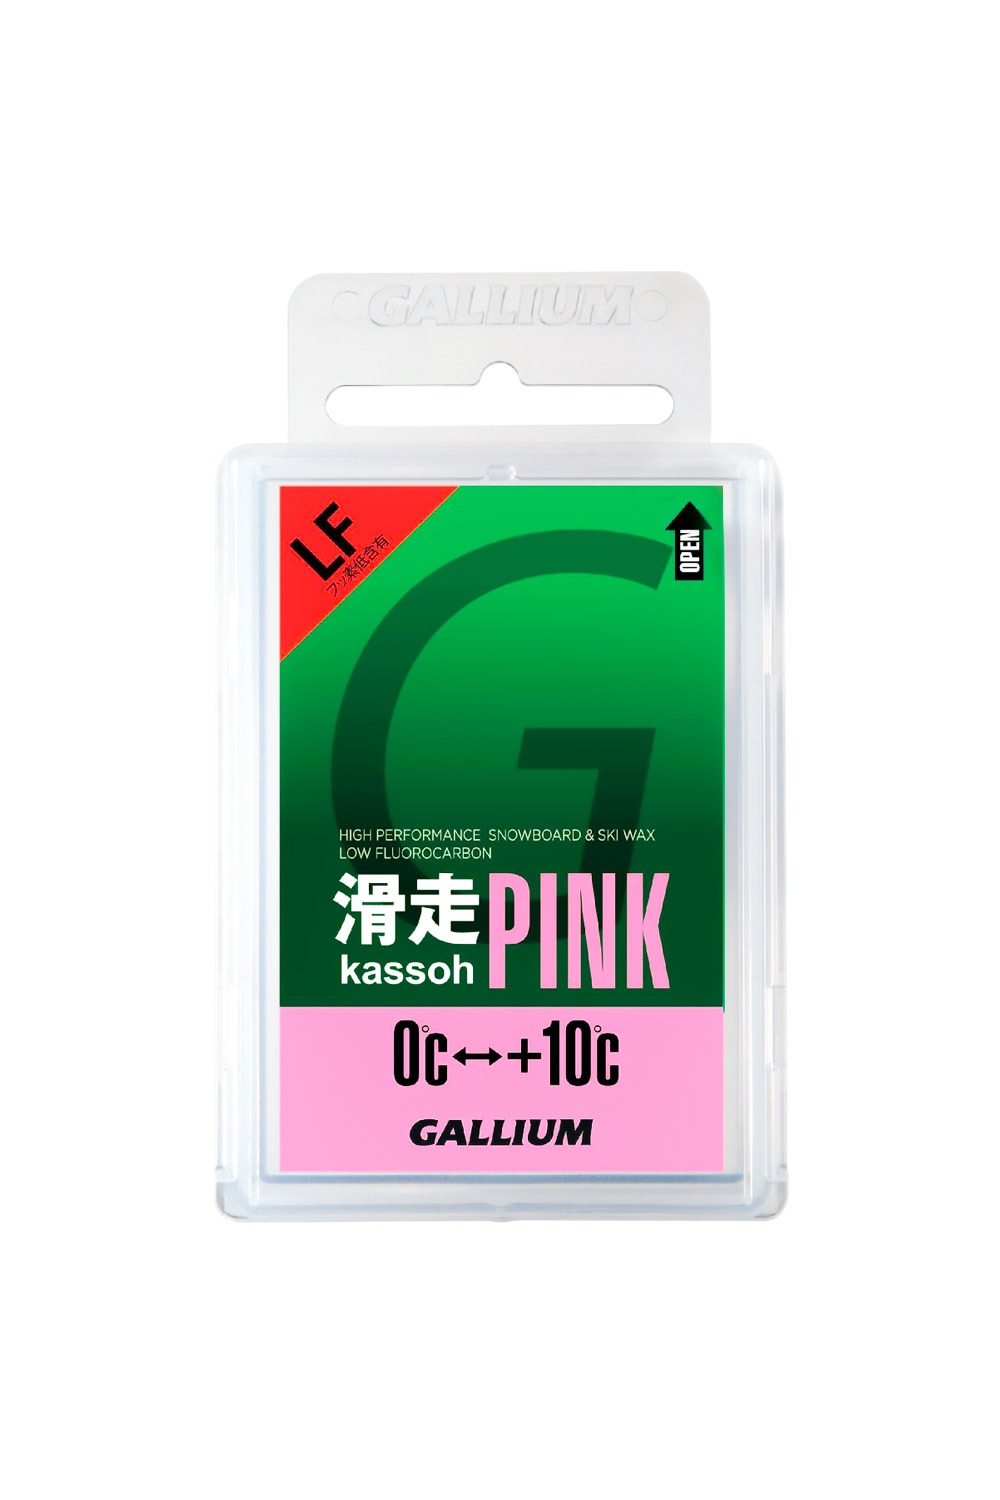 갈륨왁스 카소 핑크 LF -저불소 탑왁스 GALLIUM WAX KASSOH (활주) PINK (50g)/GALLIUM WAX KASSOH (활주) PINK (50g)/SW2126_HGZ609PK_DHGZ609PK